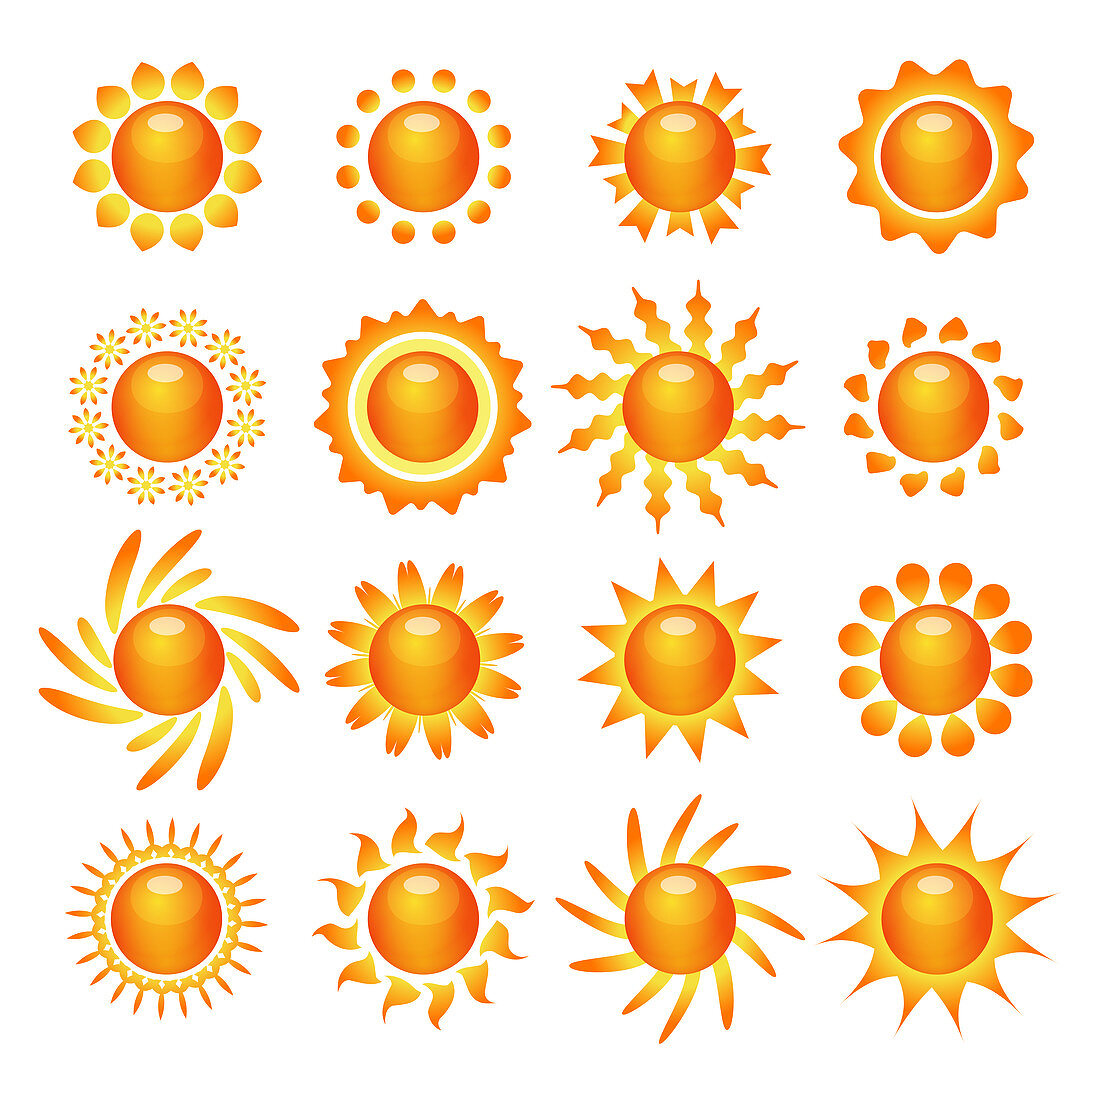 Sun icons, illustration